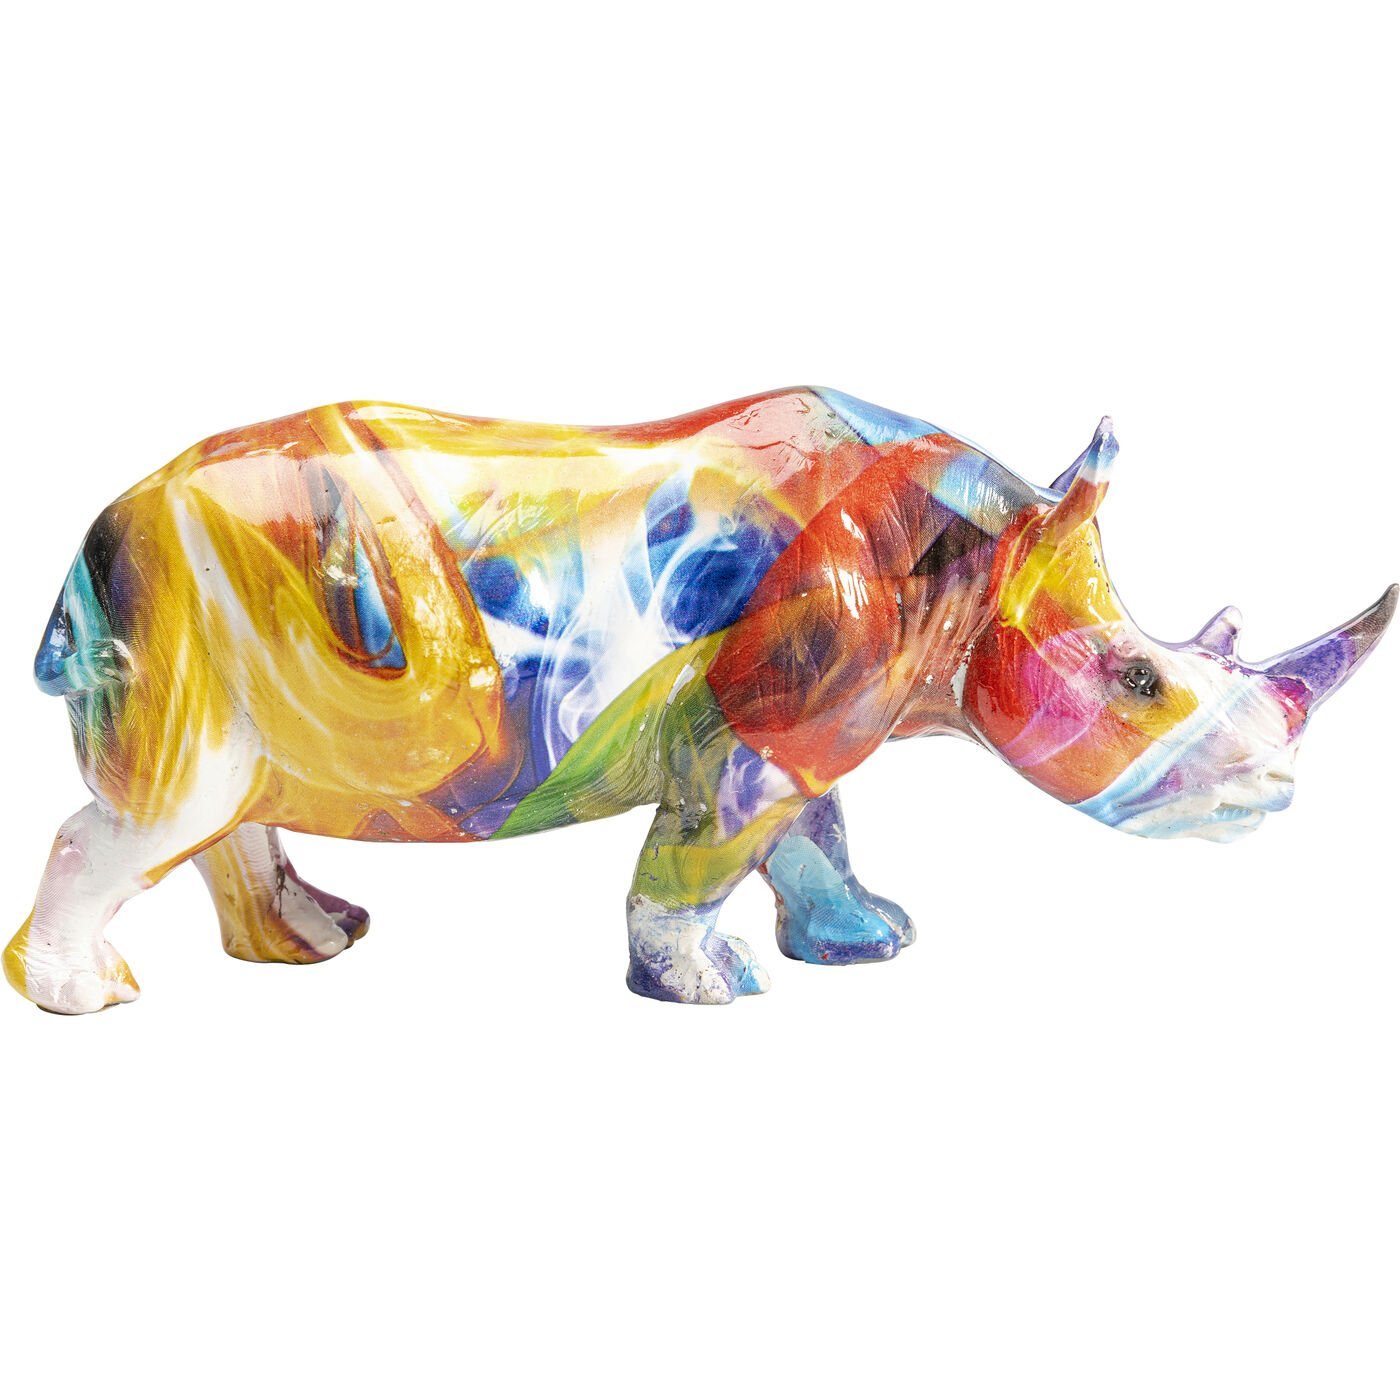 Neueste Artikel von KARE Dekofigur Colored Rhino